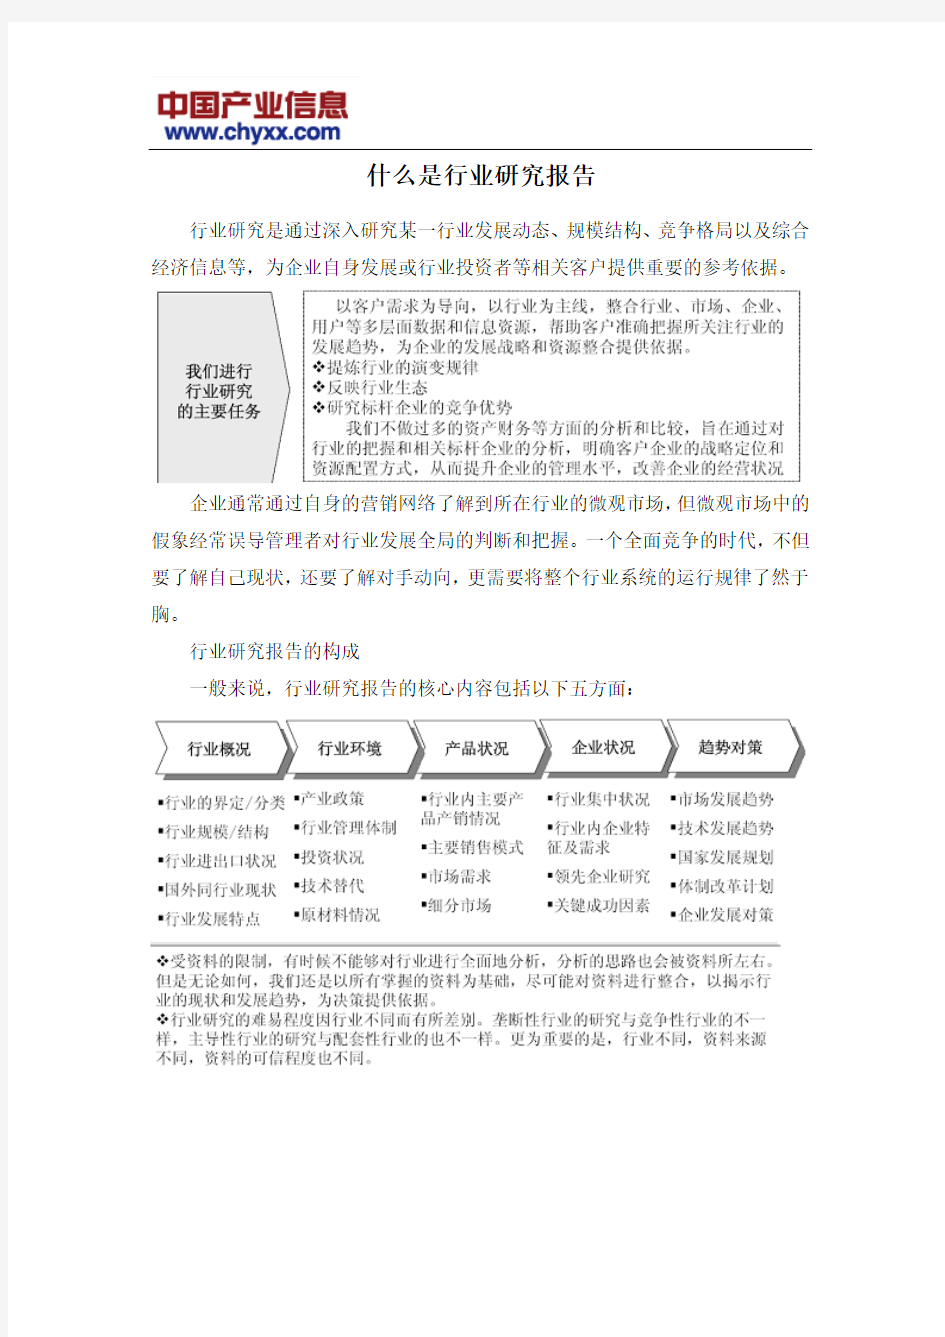 2016-2022年中国家庭美容保健仪器市场运营态势报告